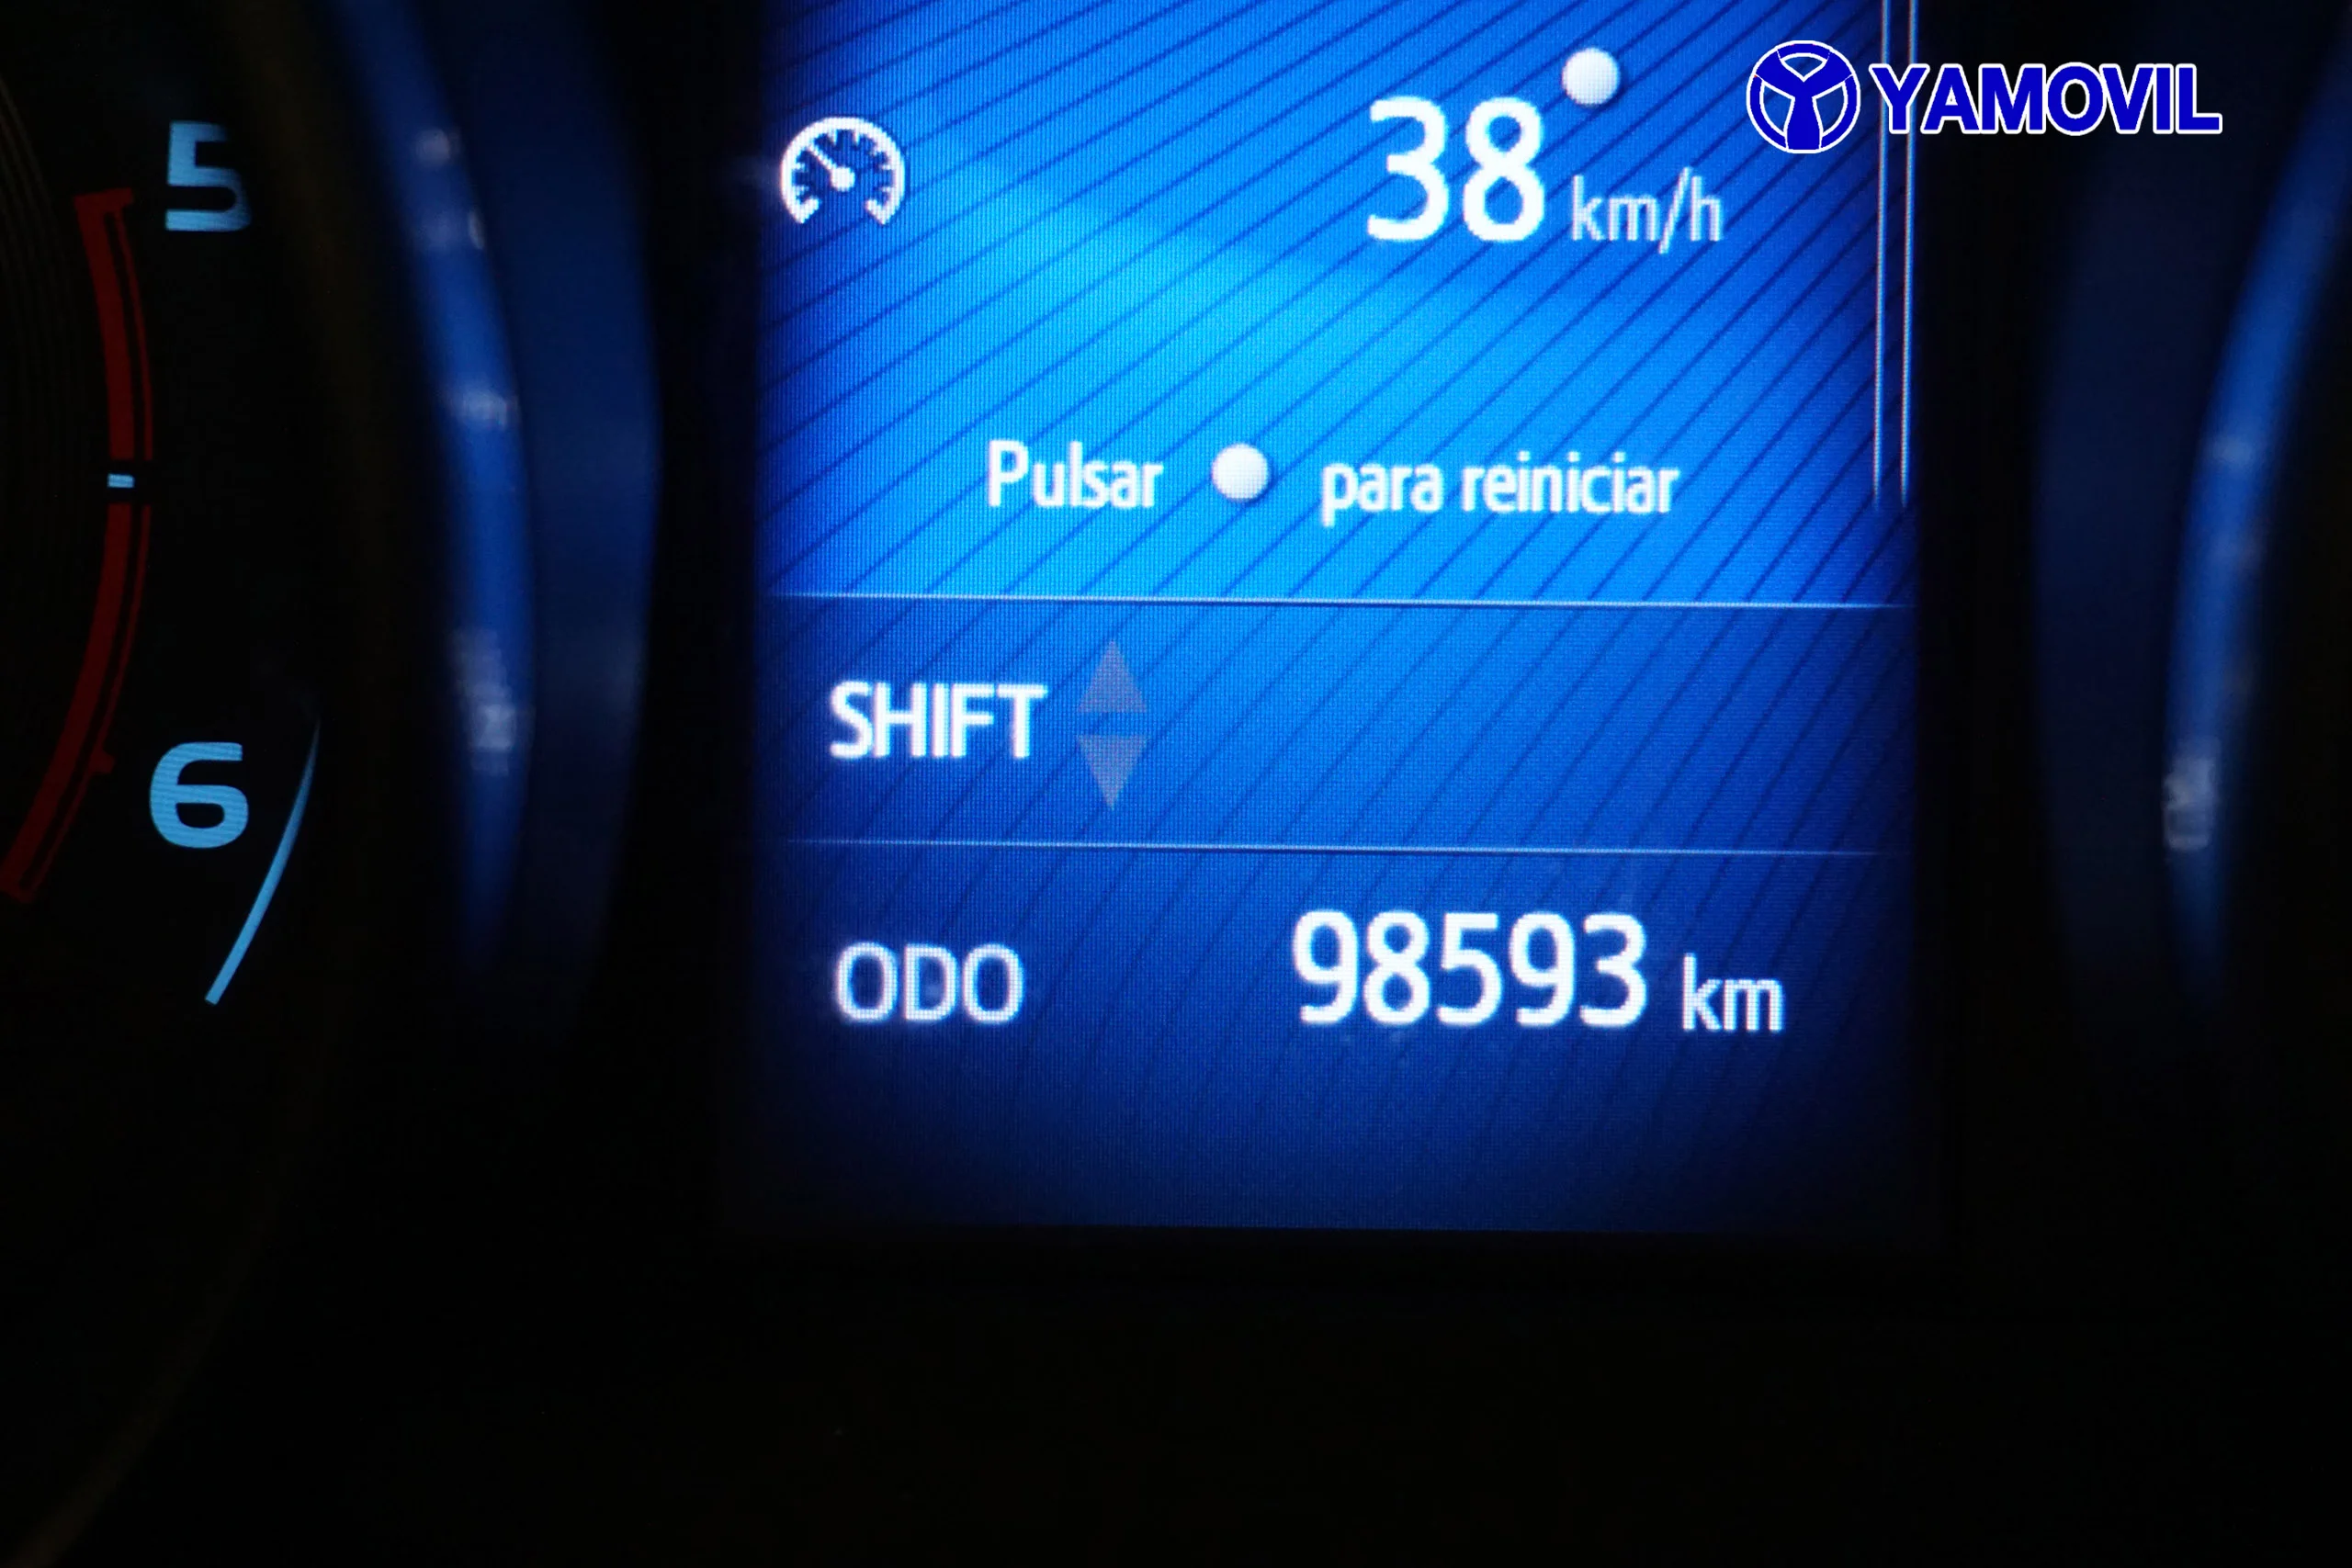 Toyota Auris 1.6 ACTIVE TOURING 115D SPORT 5P - Foto 22